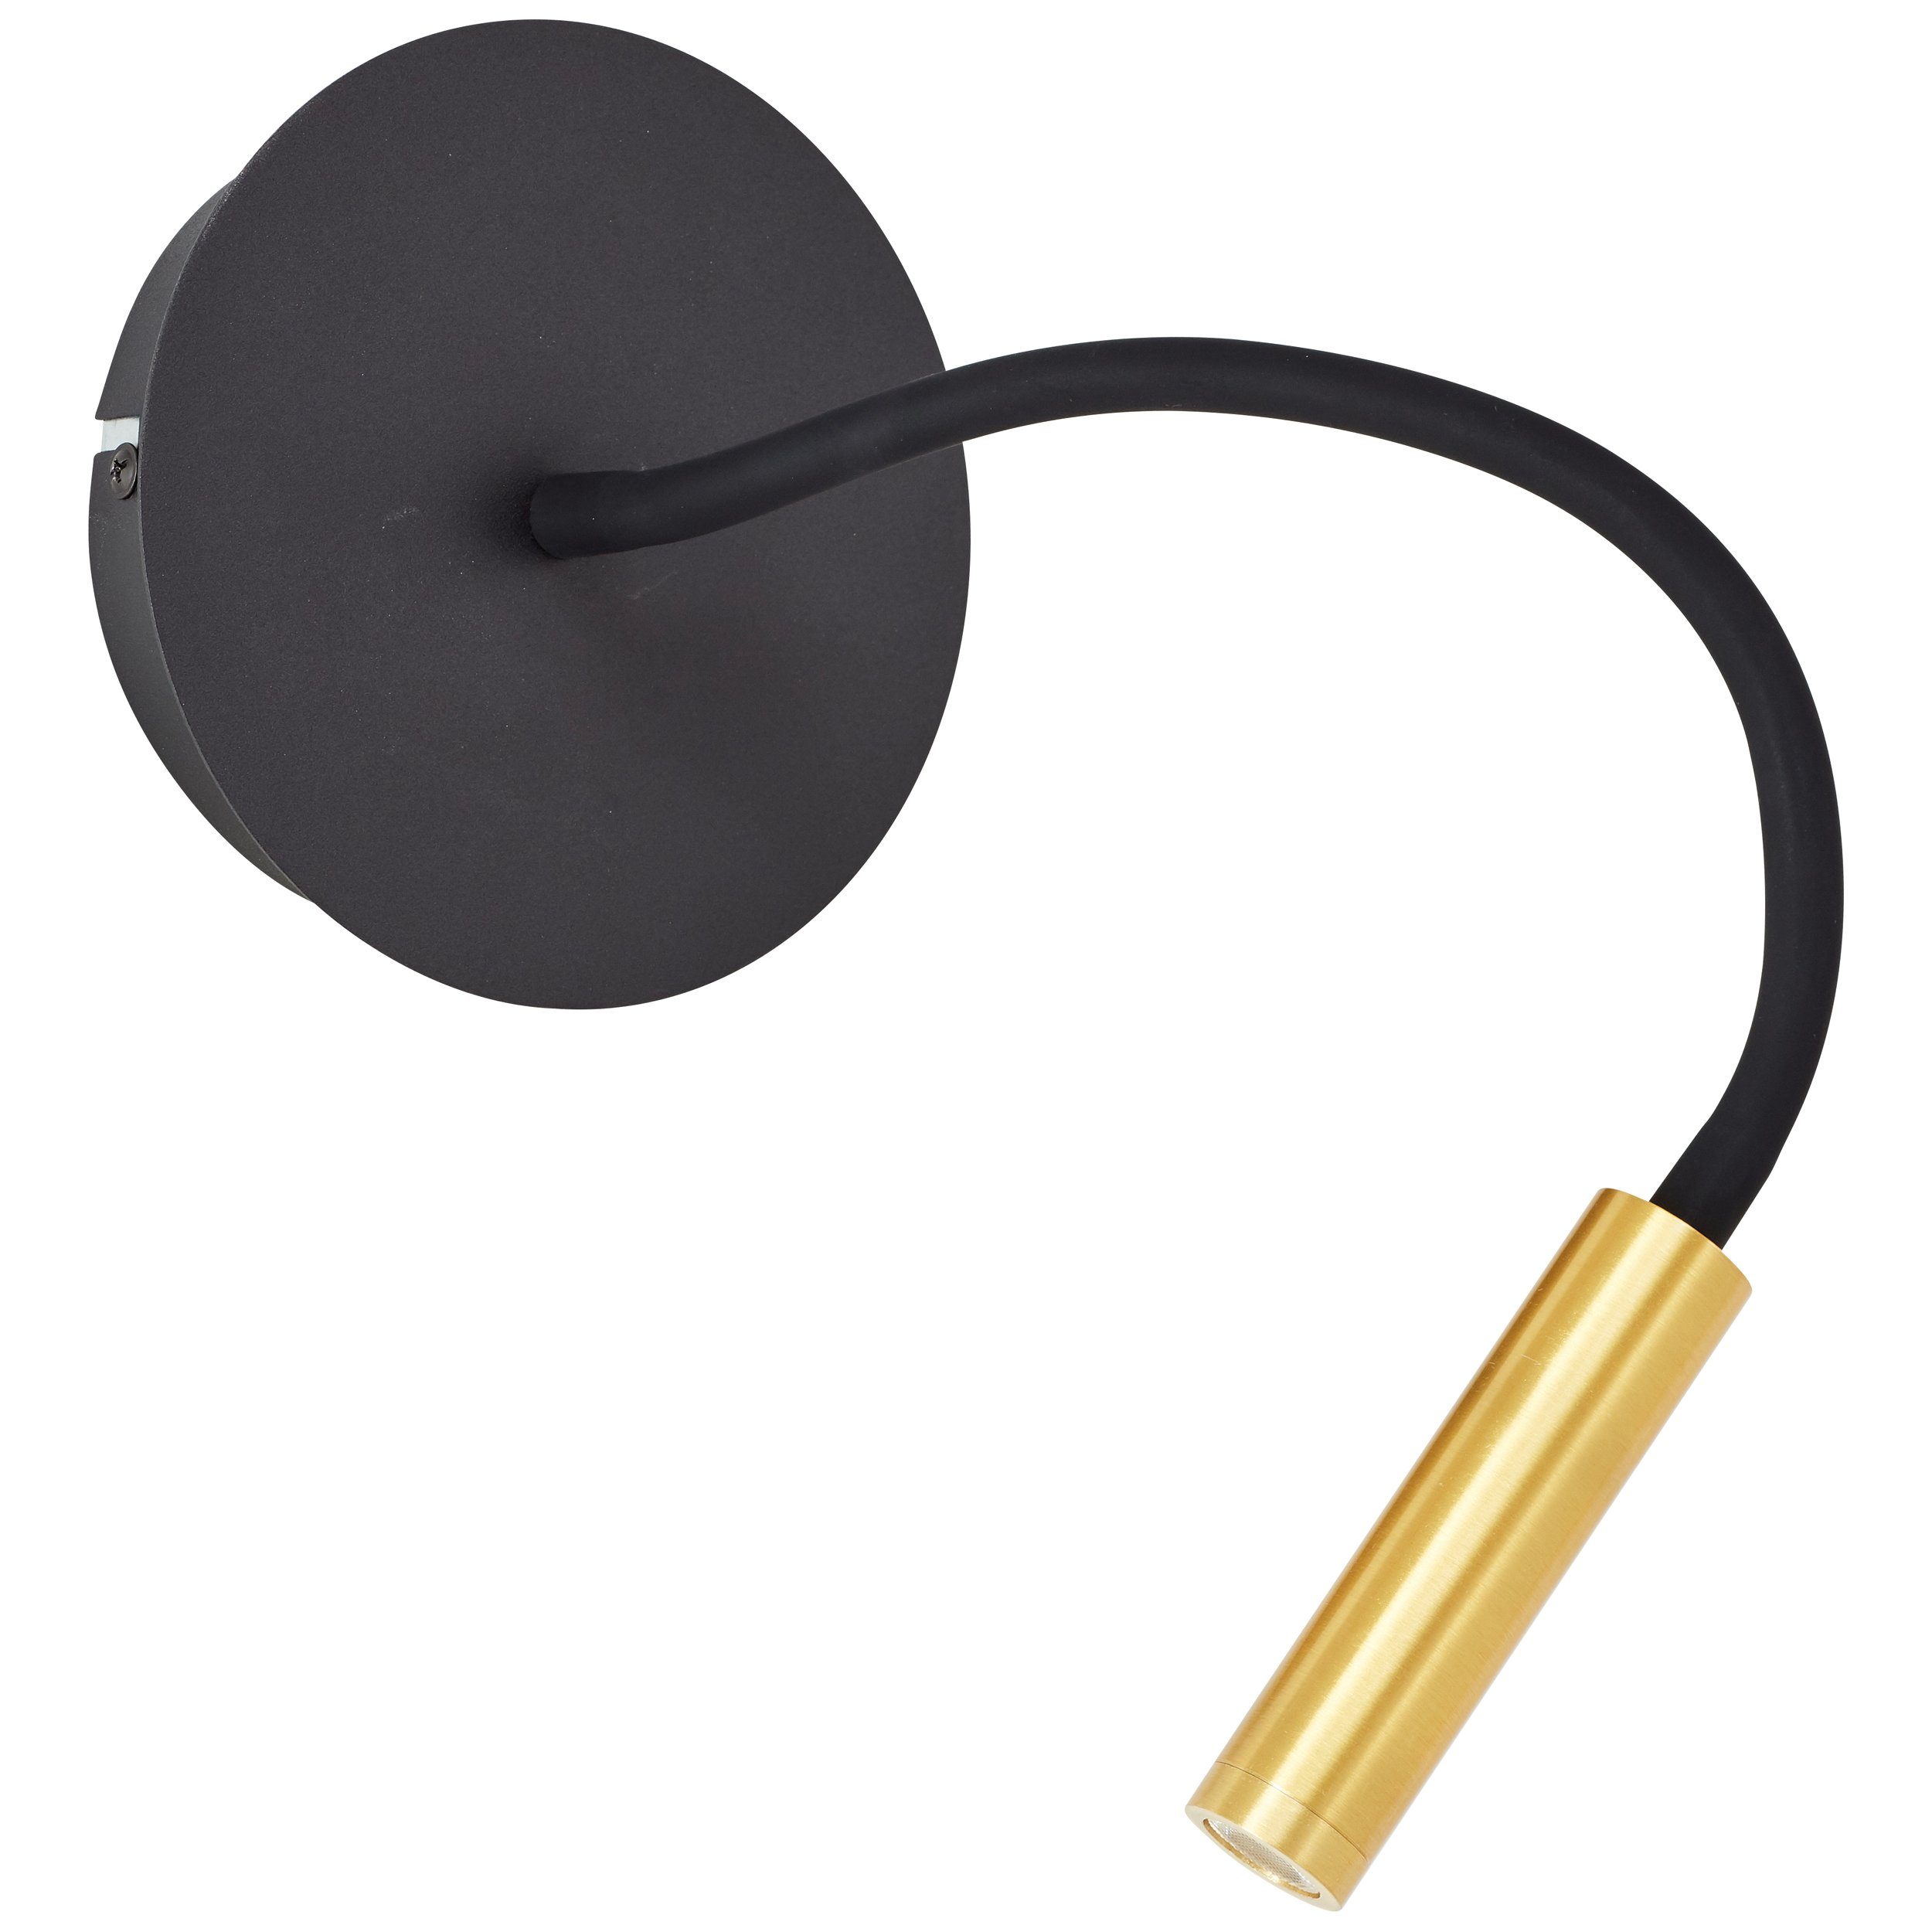 Super beliebt Lightbox LED Wandleuchte, LED fest K, schwarz/matt gold flexibler Lesearm, 3000 lm, LED-Wandleuchte, integriert, warmweiß, 270